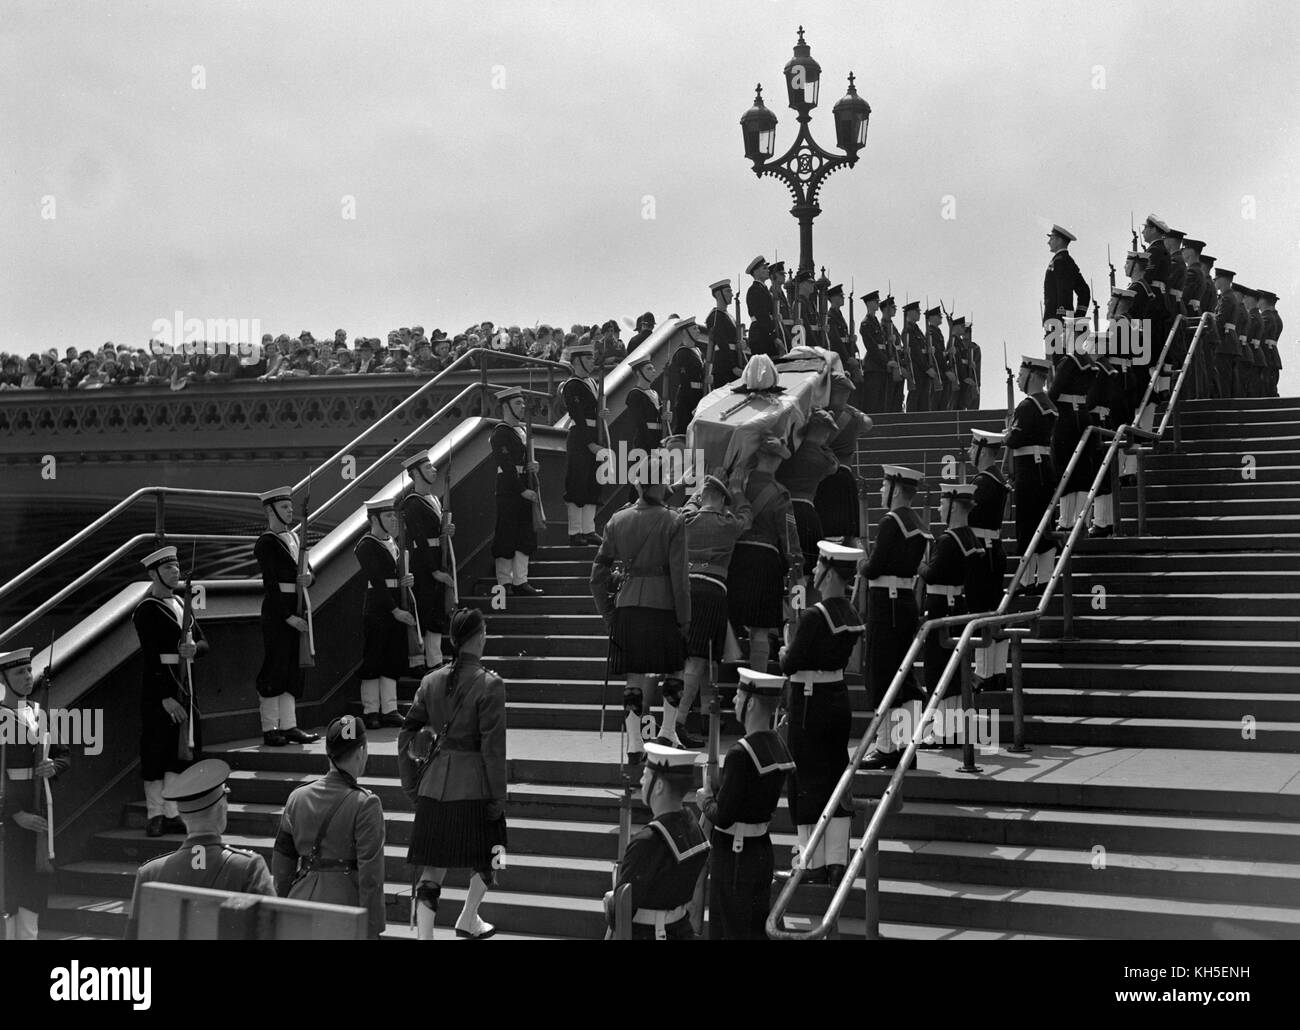 La foule sur le pont de Westminster observe que le cercueil à drapeau de Lord Wavell est pris en charge par le lancement de l'armée à l'embarcadère de Westminster. Banque D'Images